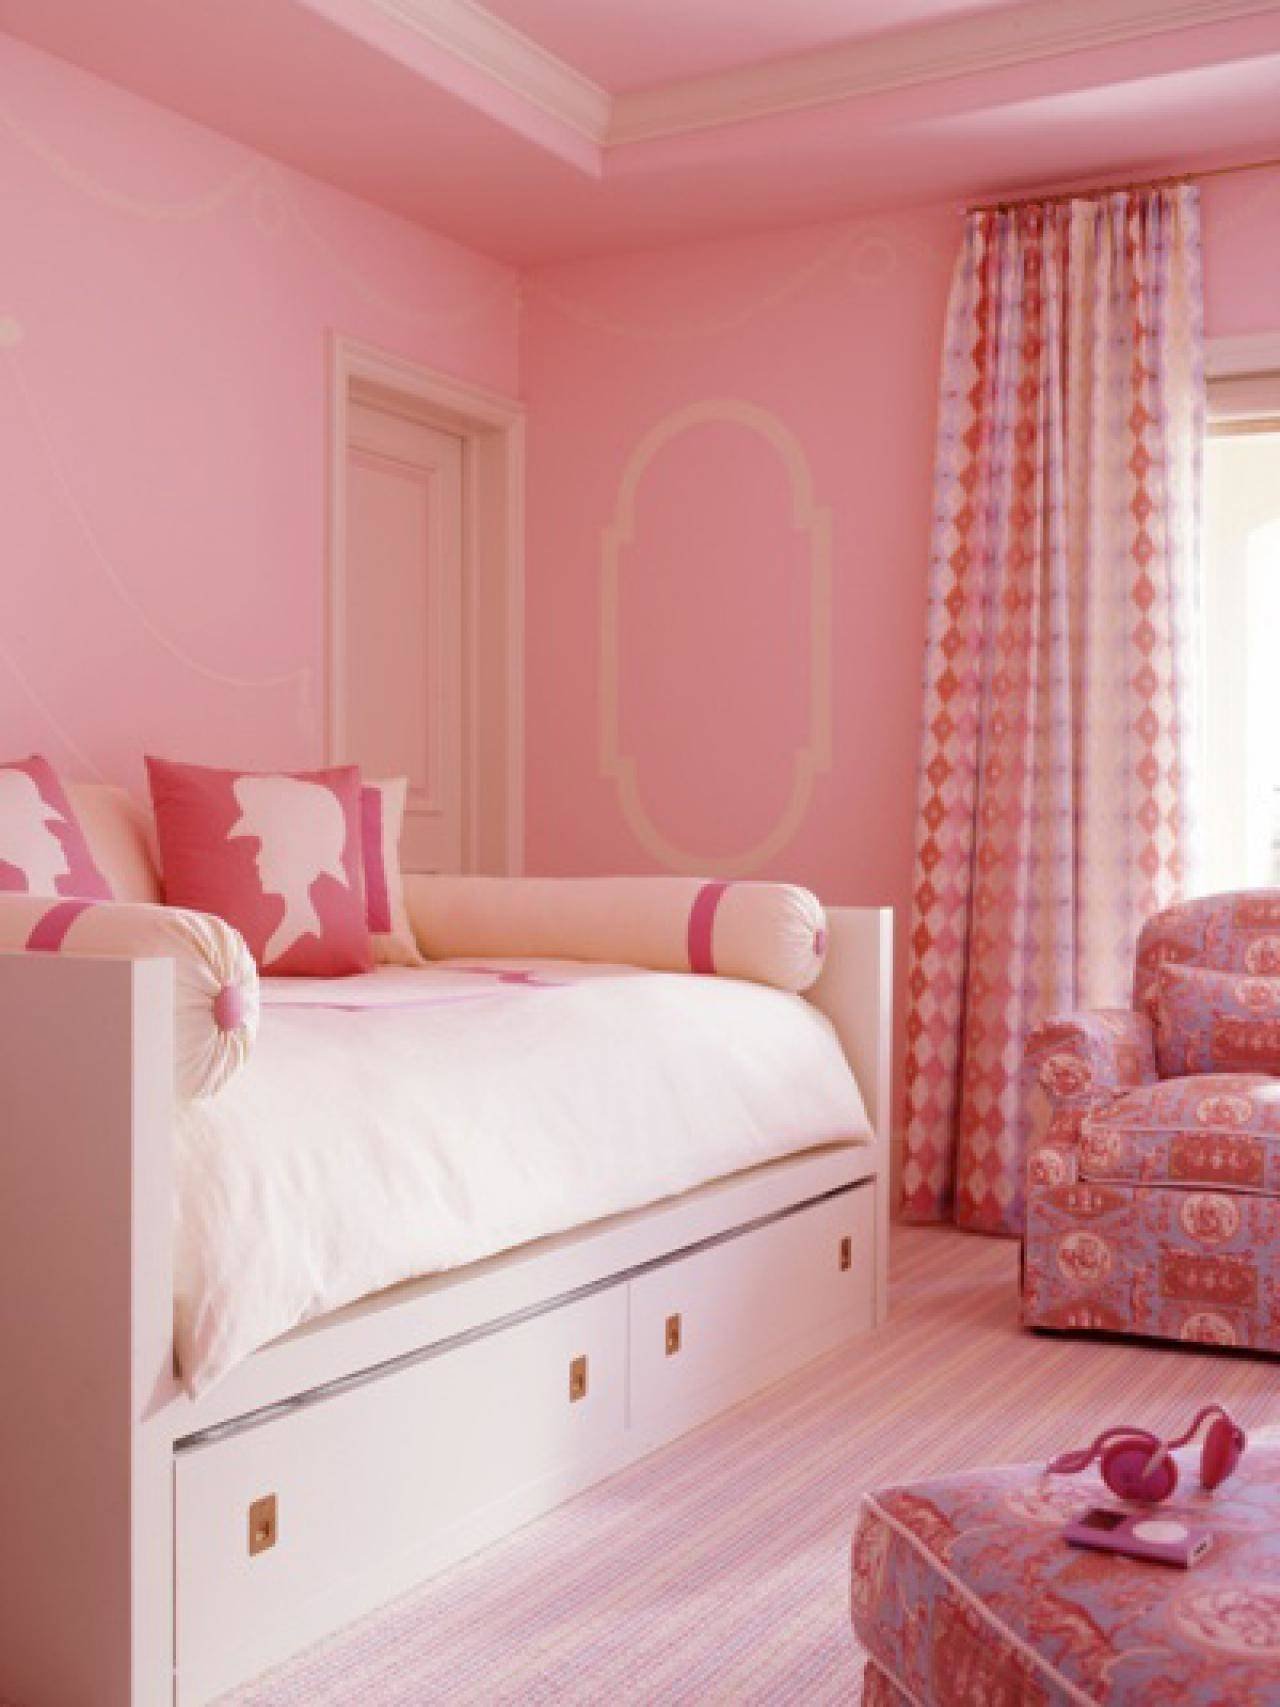 Комната в розовых тонах. Комната для девочки розового цвета. Детская спальня в розовых тонах. Спальня для девочки в розовых тонах. Нежная детская комната для девочки.